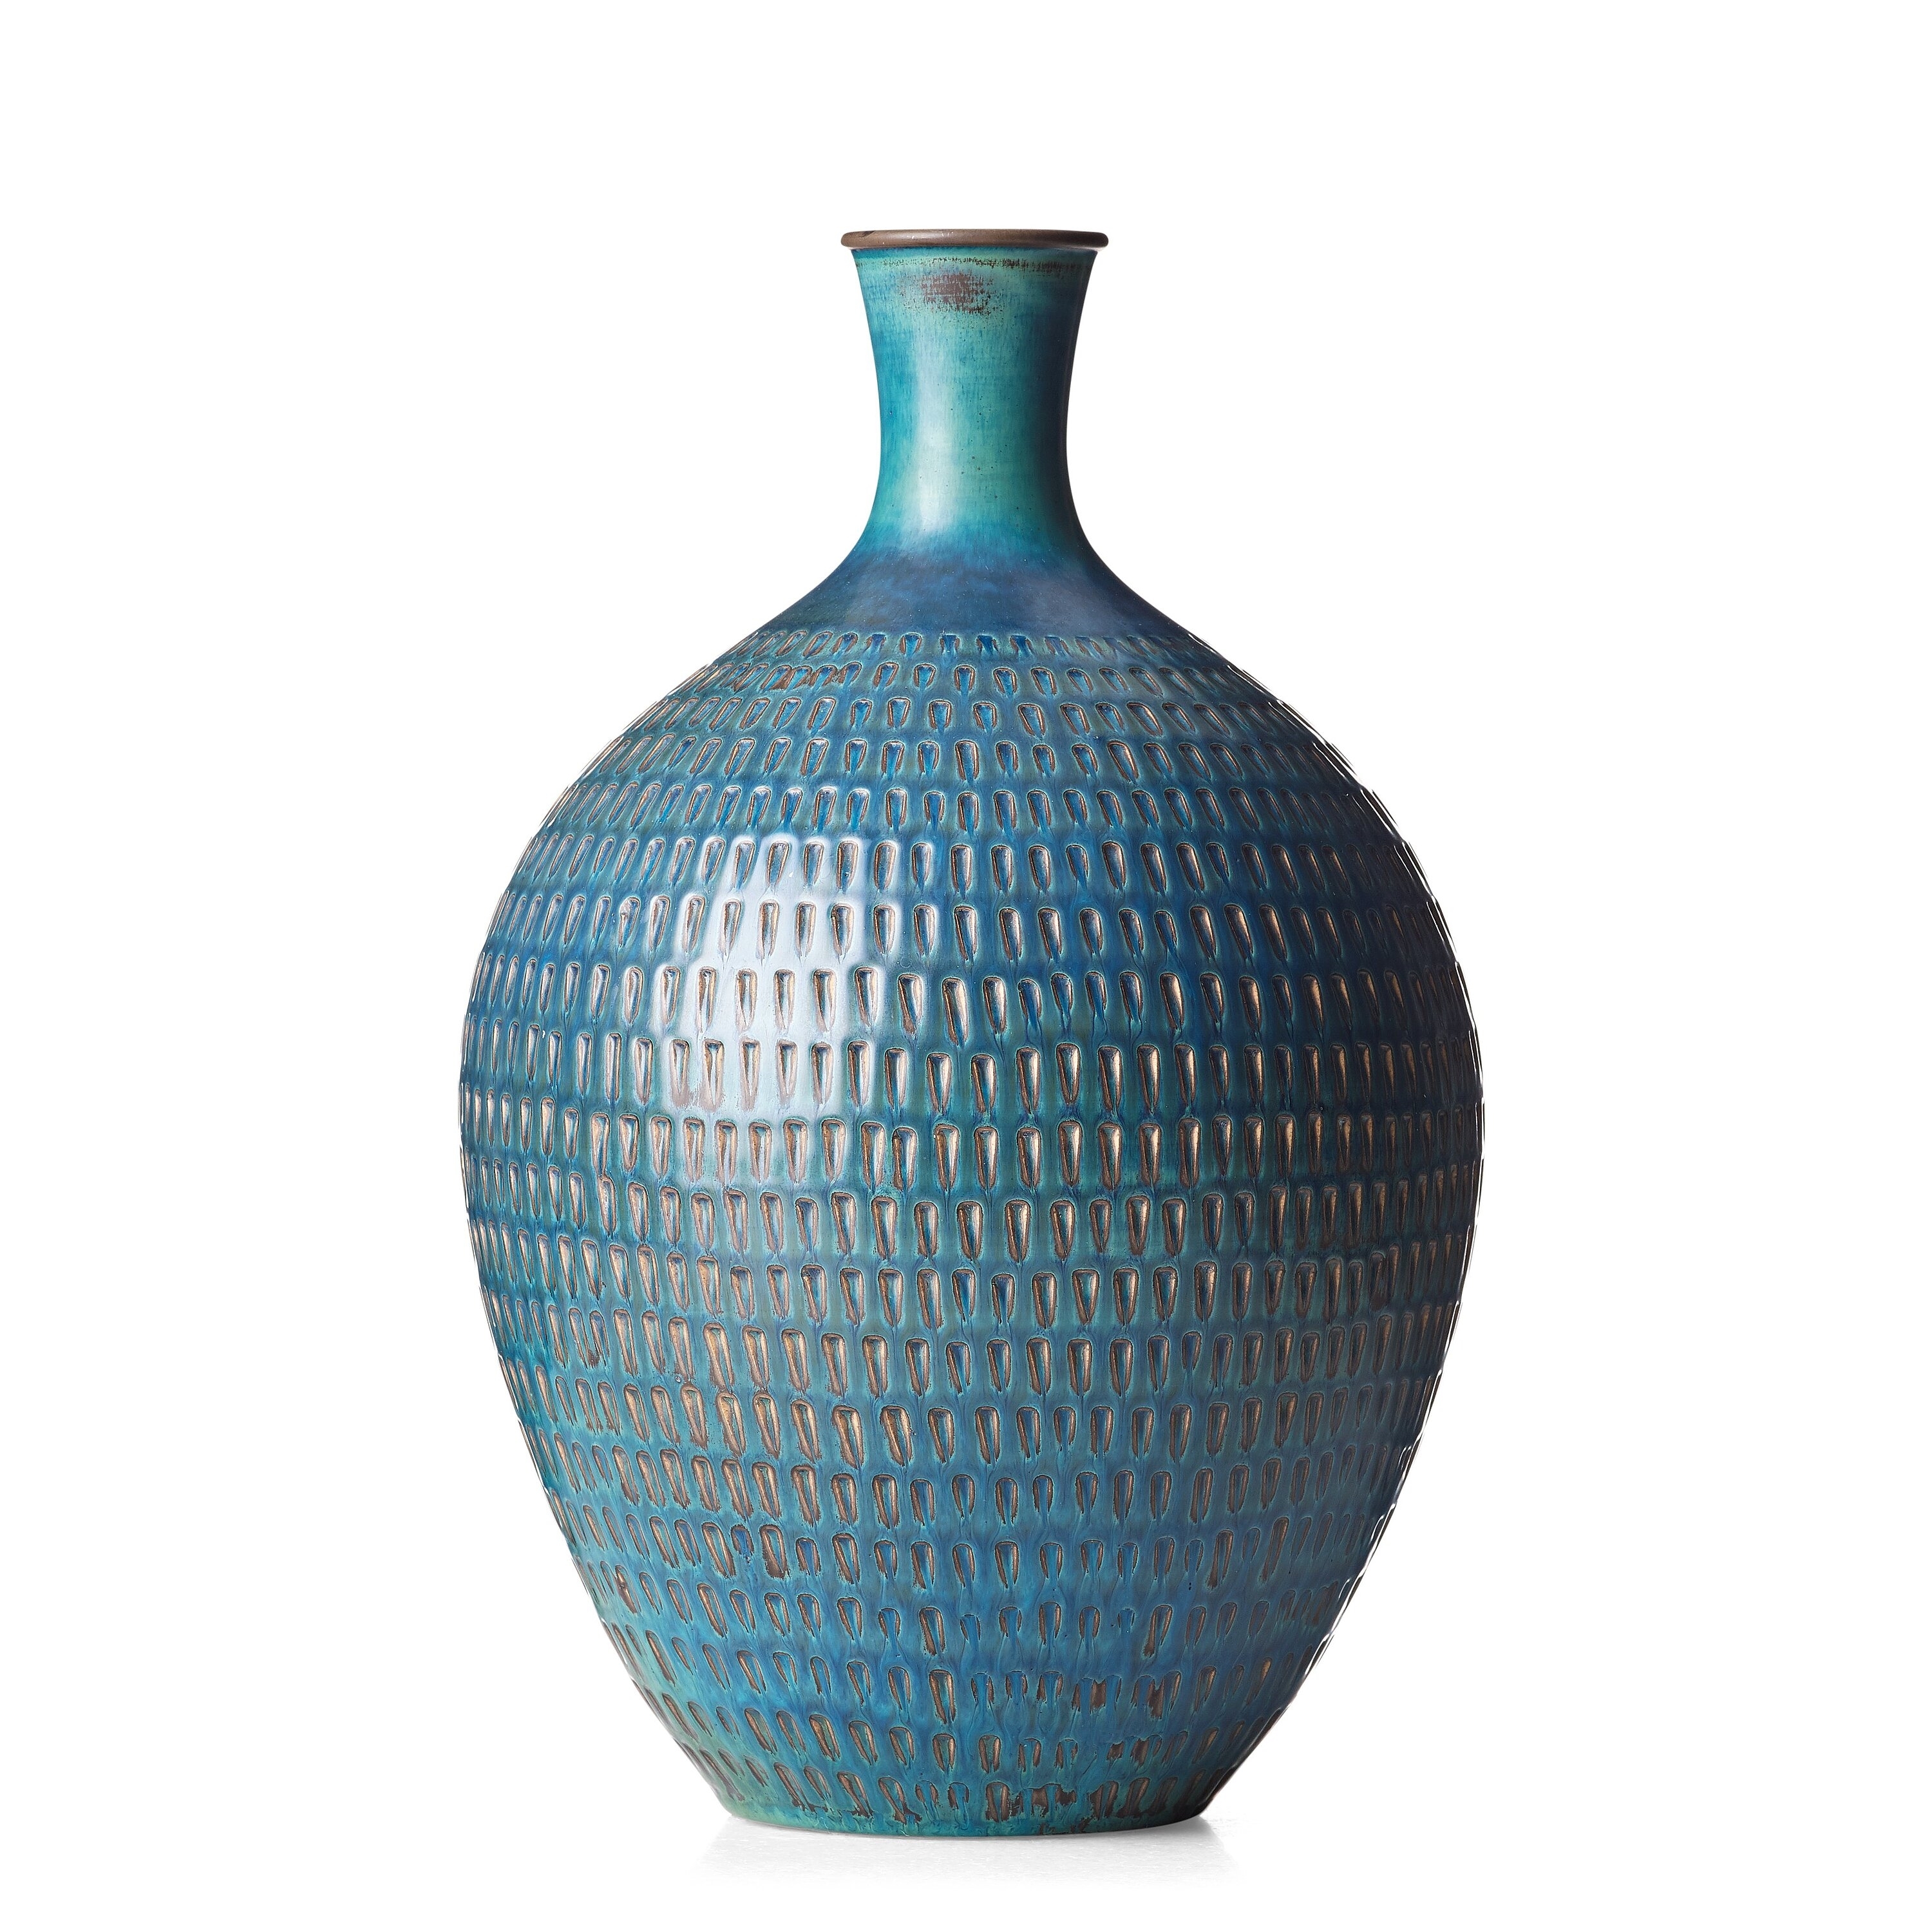 A stoneware vase by Stig Lindberg, 1958-1959